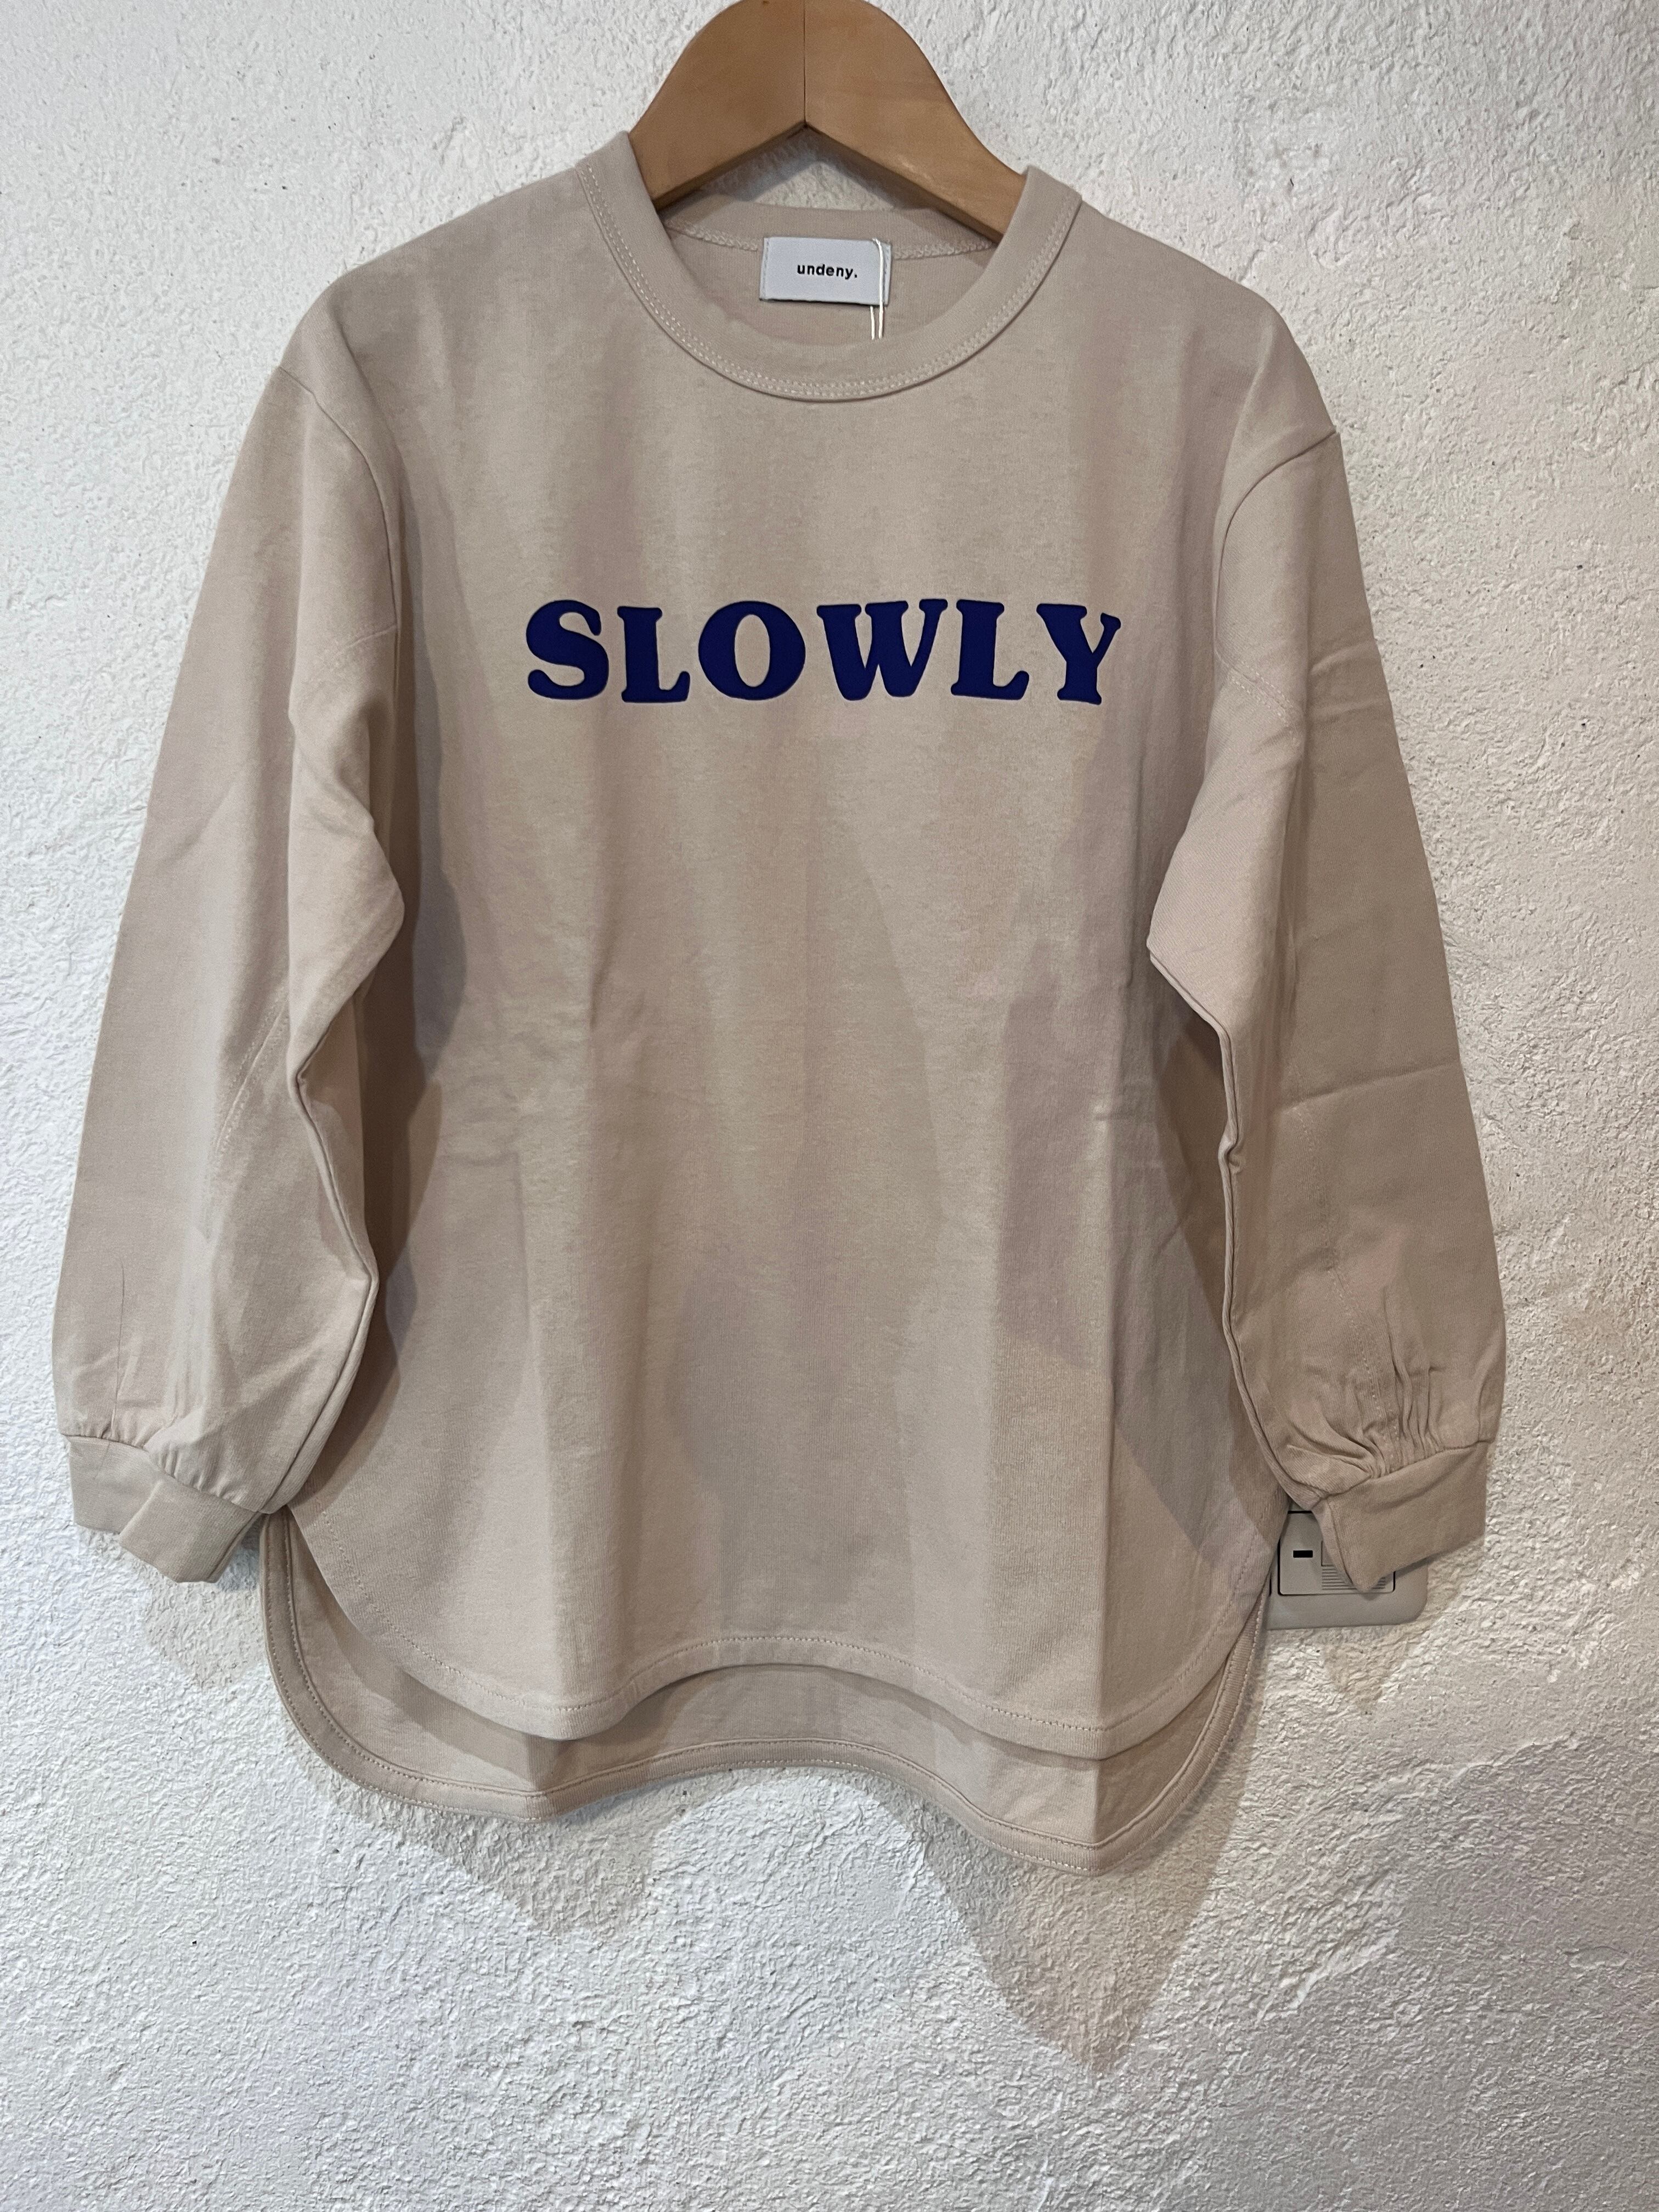 送料無料：KIDS:undeny /　SLOWLY Tシャツ110-160㎝